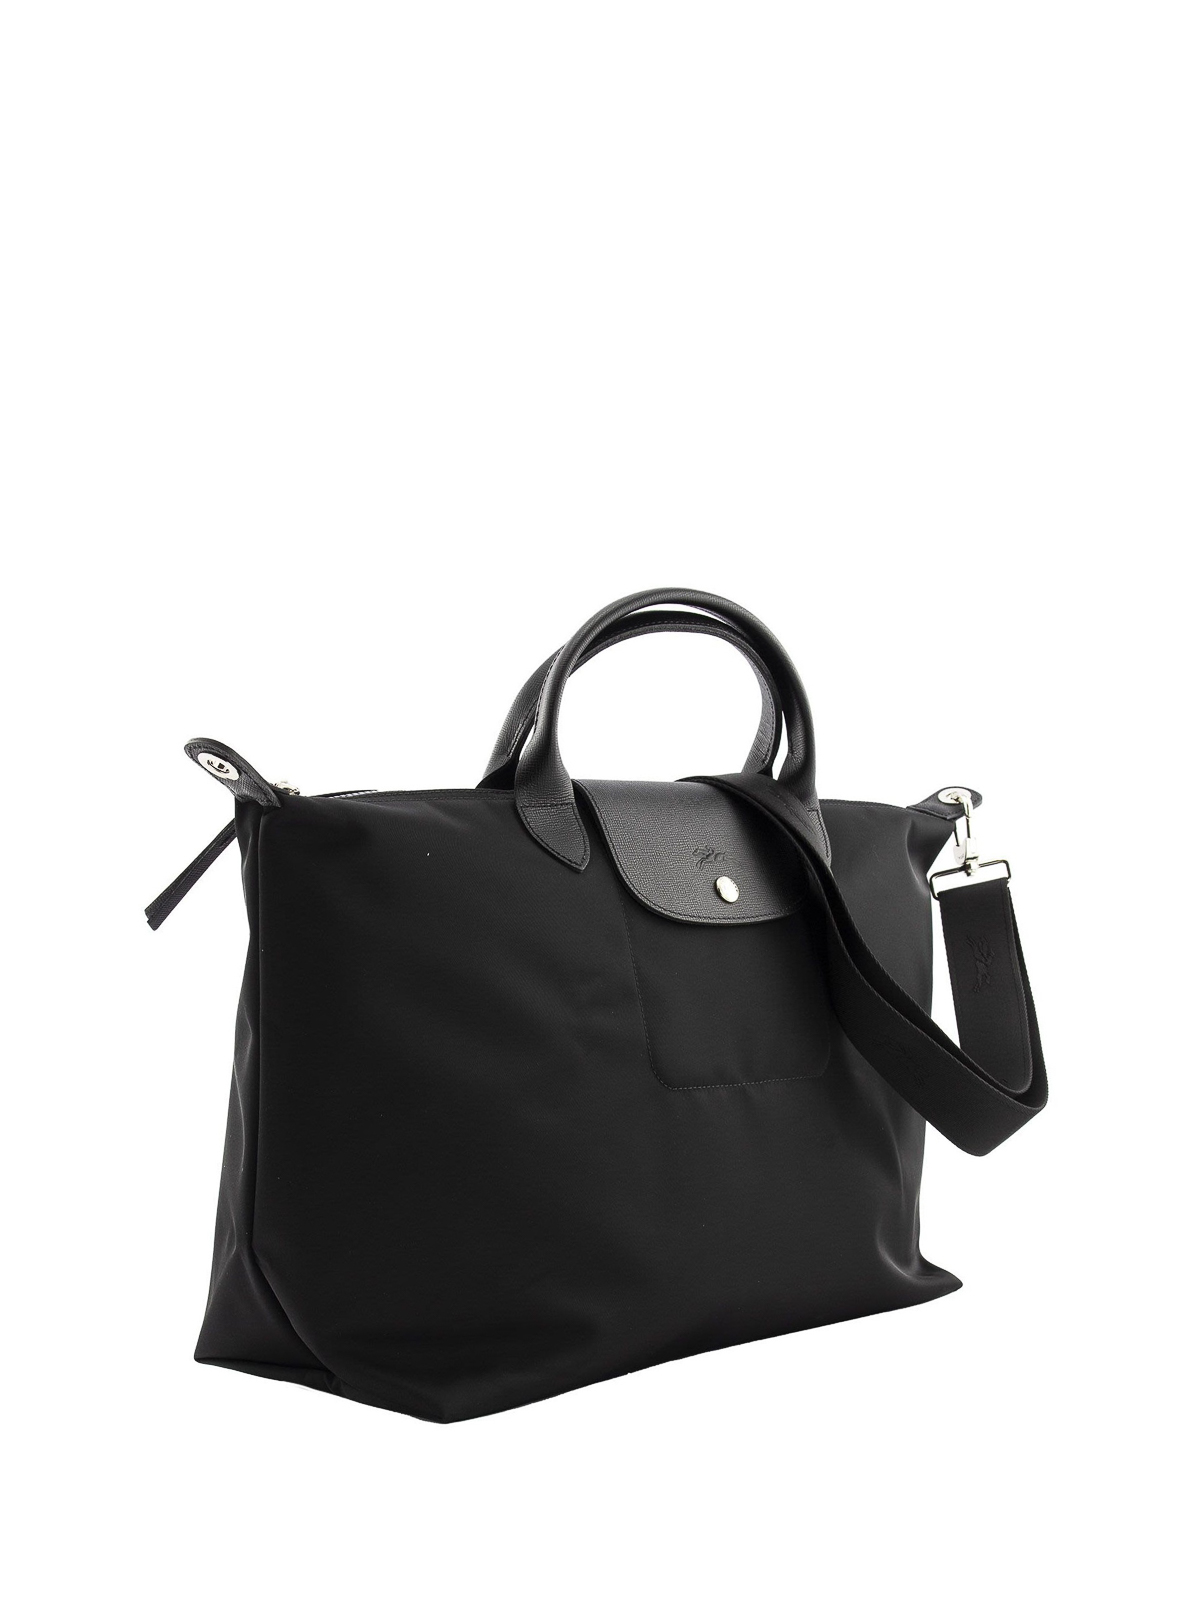 Totes bags Longchamp - Le Pliage Néo large bag - 1630598001